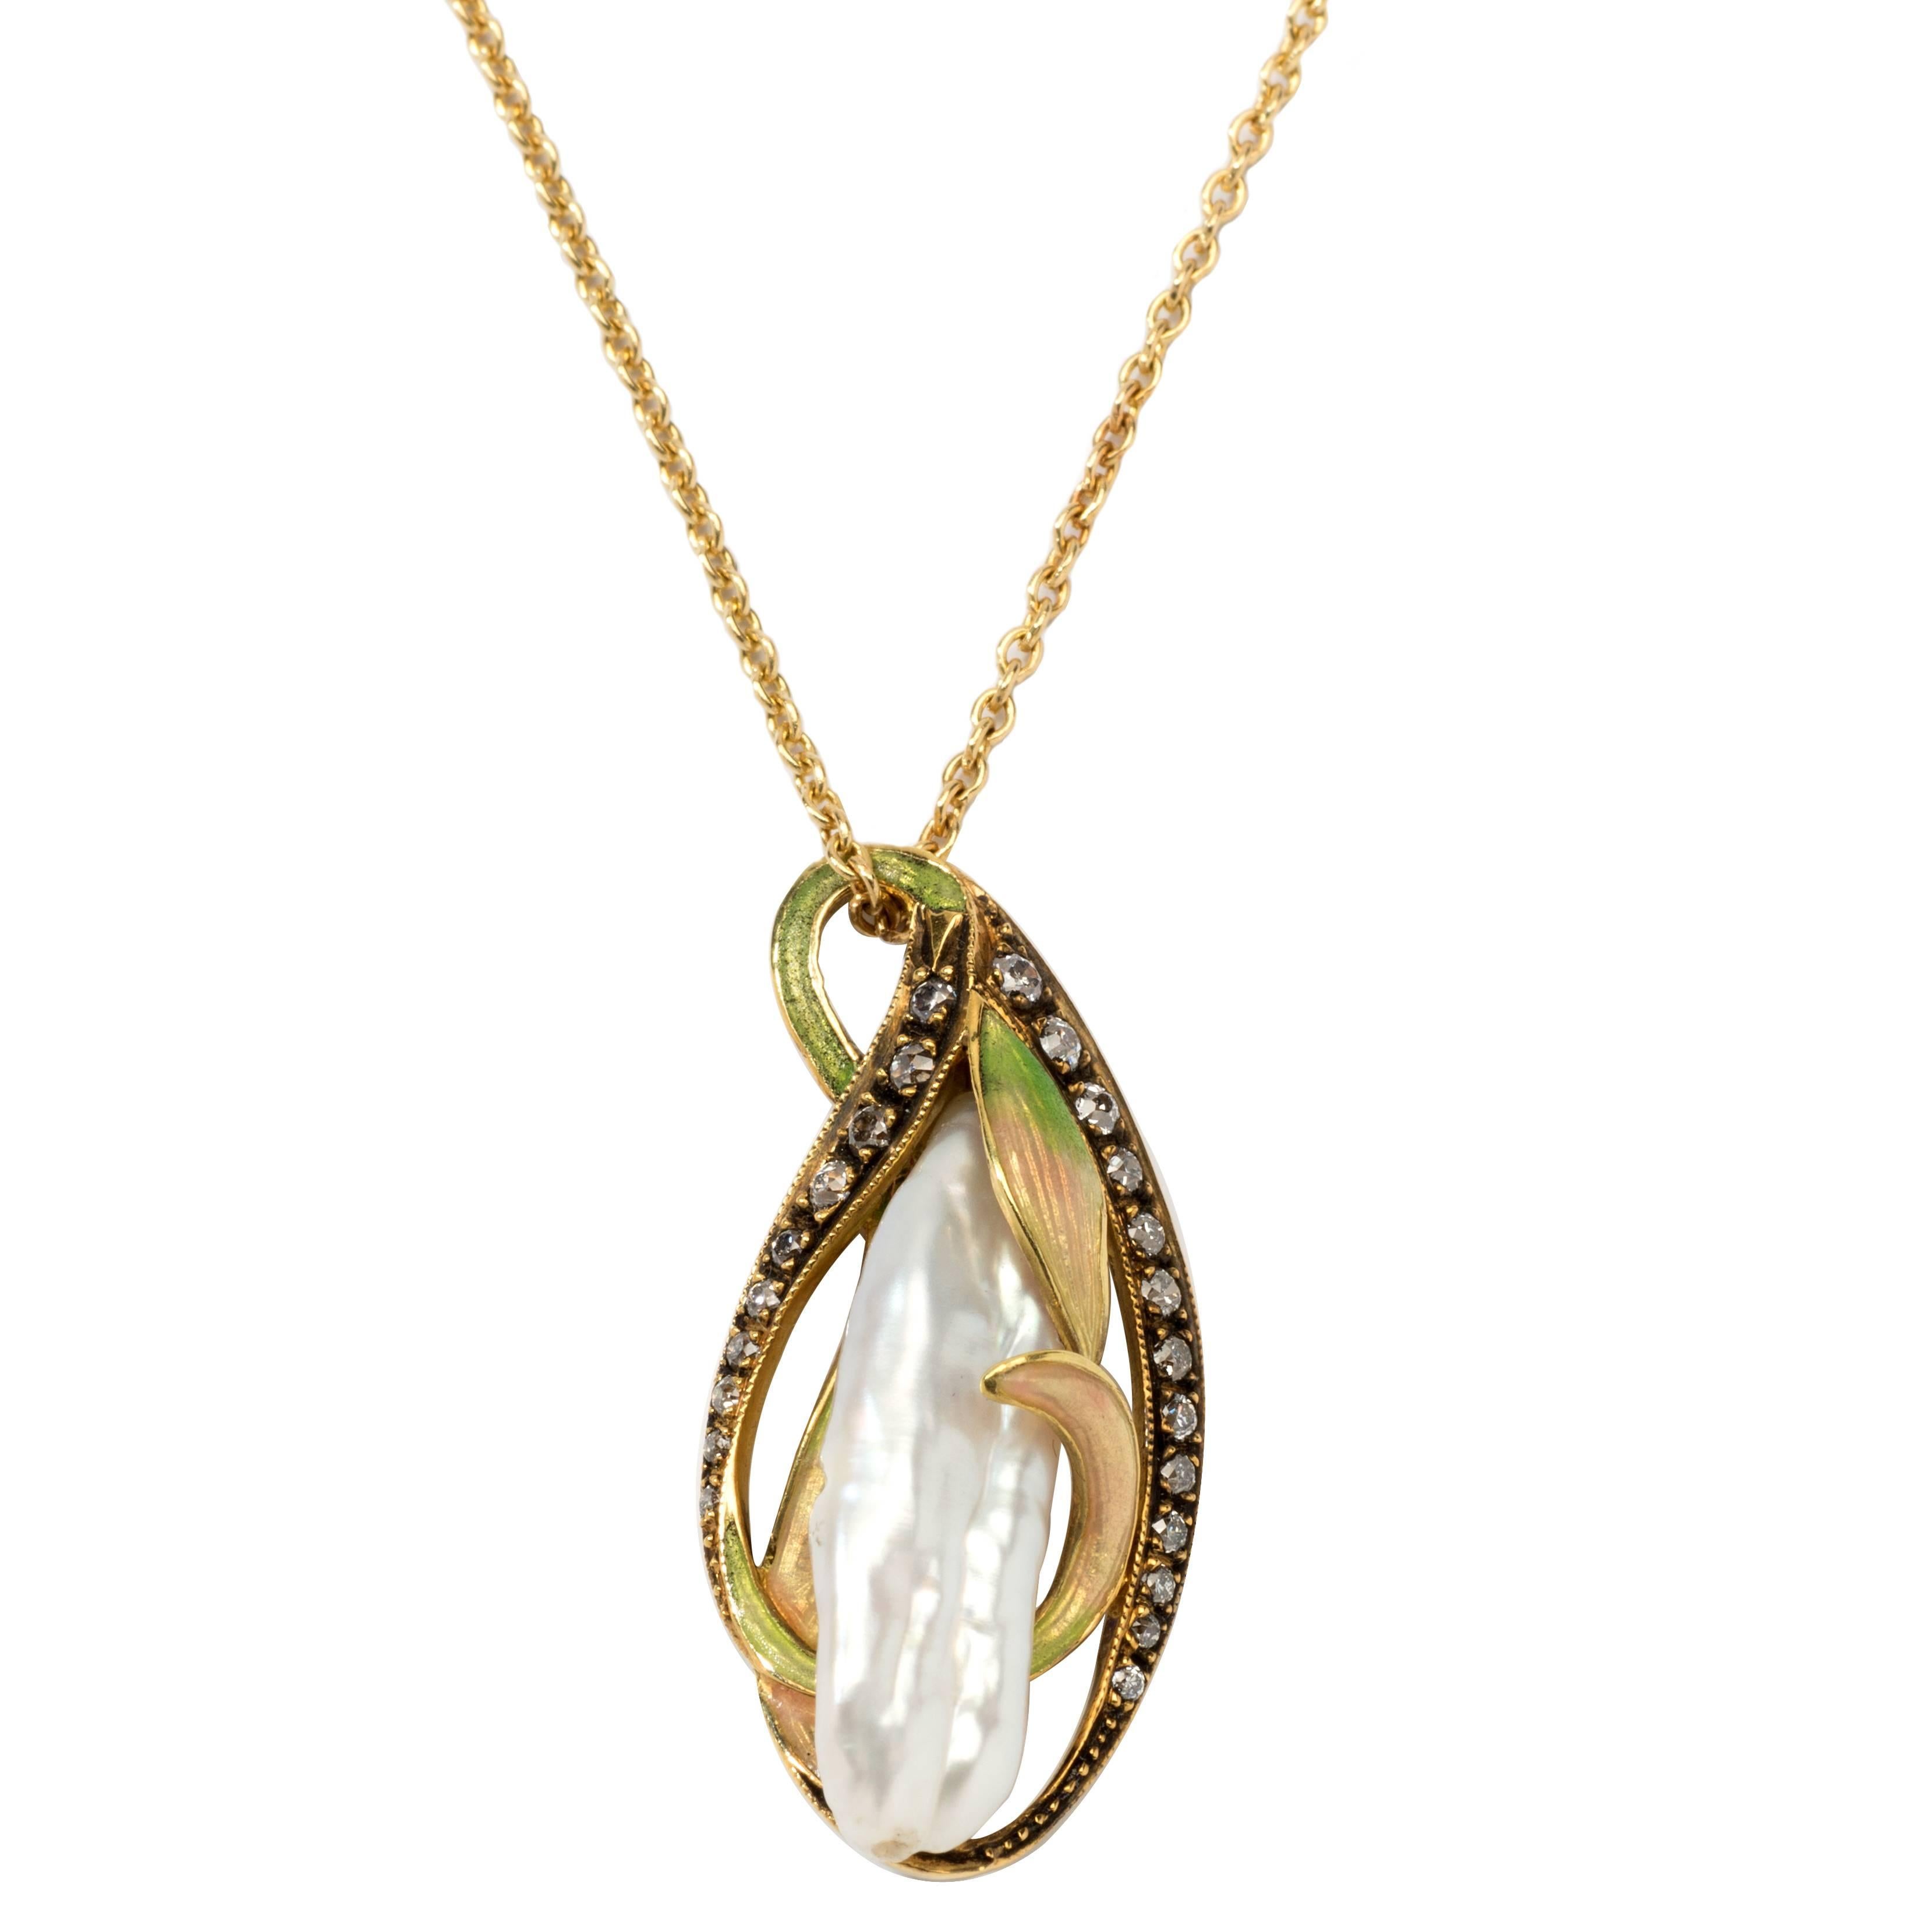 Art Nouveau Pendant Necklace with Gold Chain